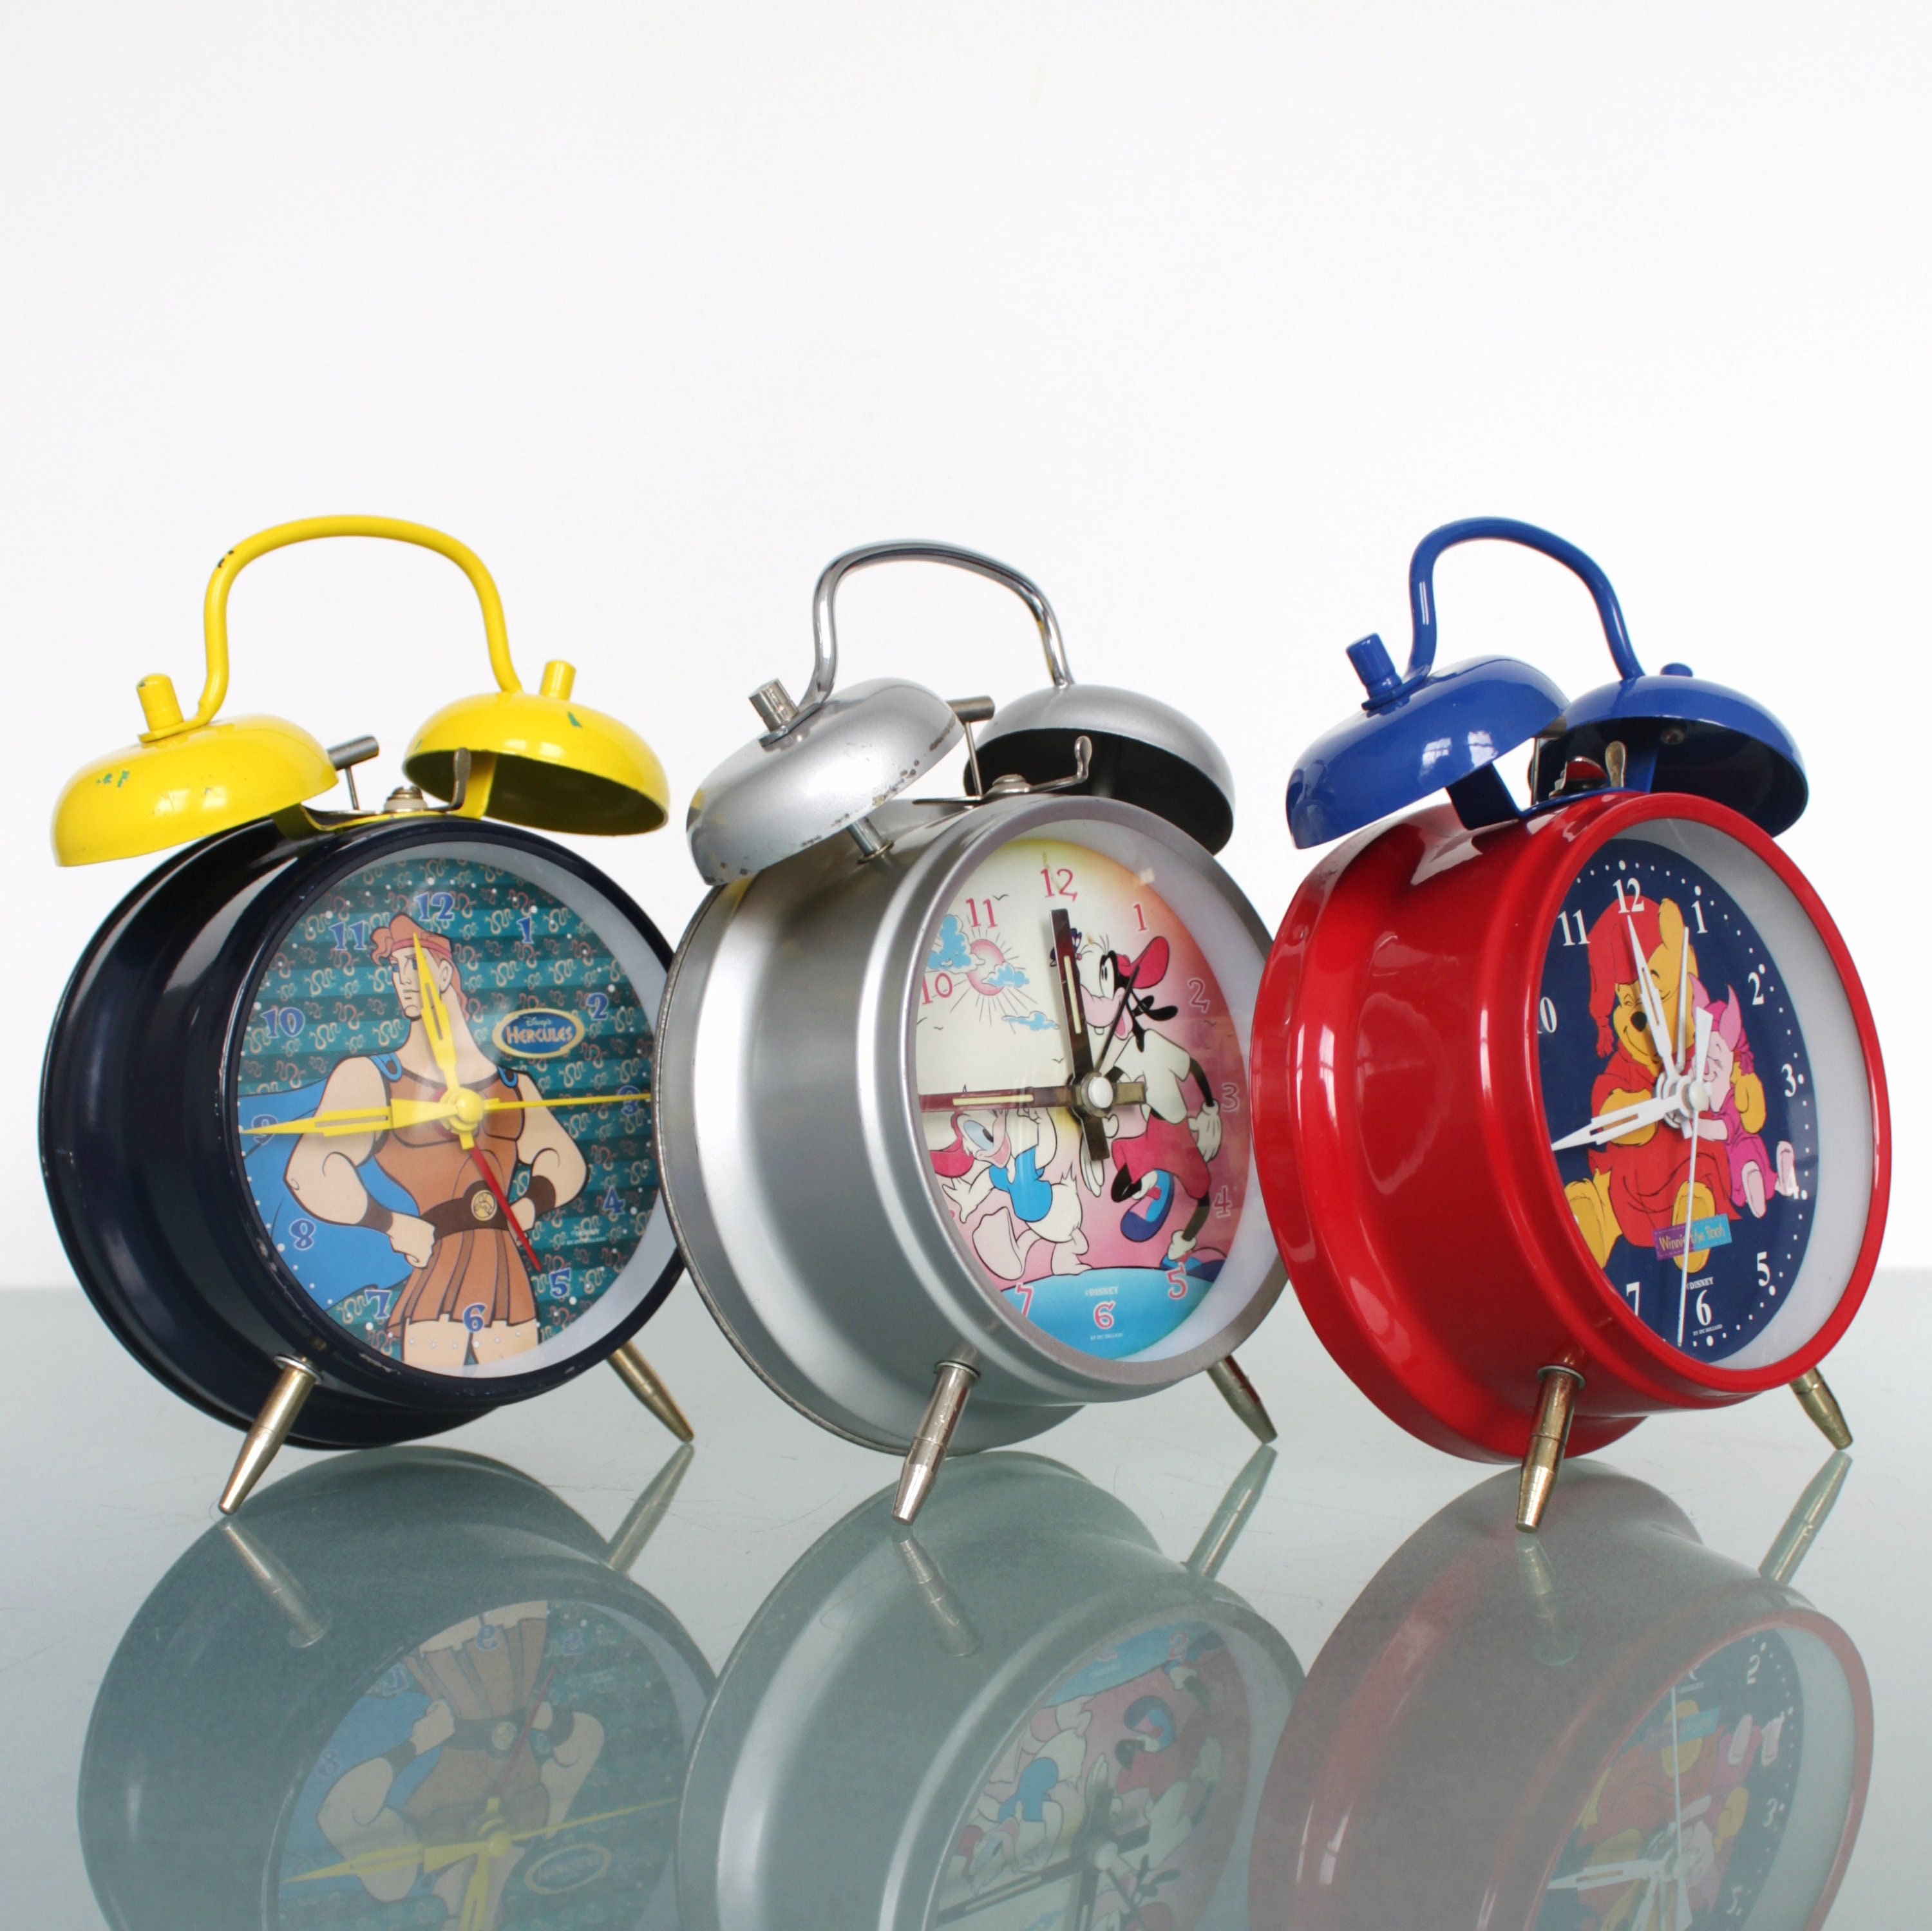 Bonito Reloj Despertador De Pato Para Niños, Bonito Reloj, B